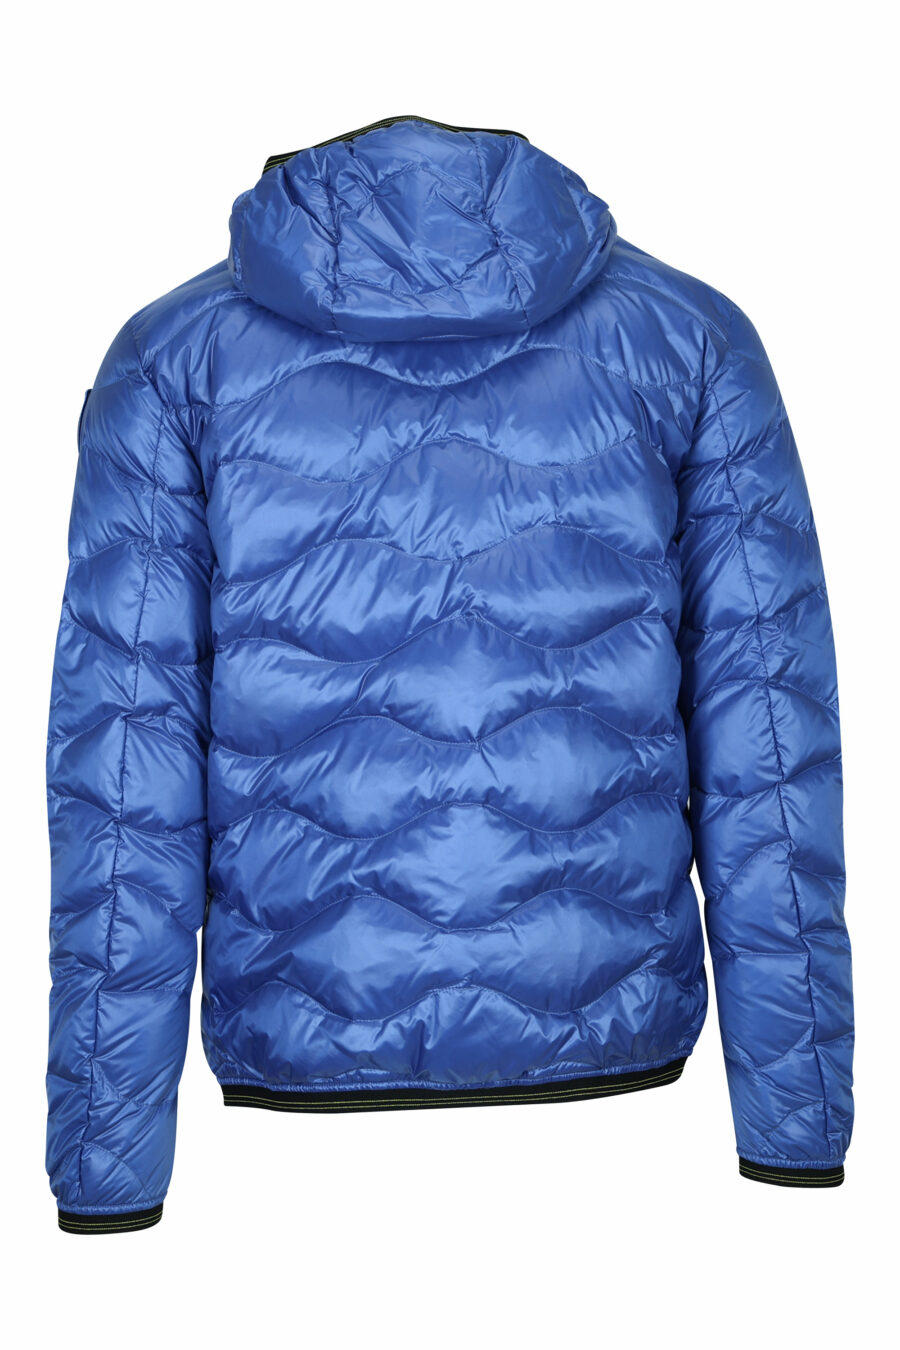 Blaue Jacke mit diagonalen Linien und Kapuze - 8058610797508 1